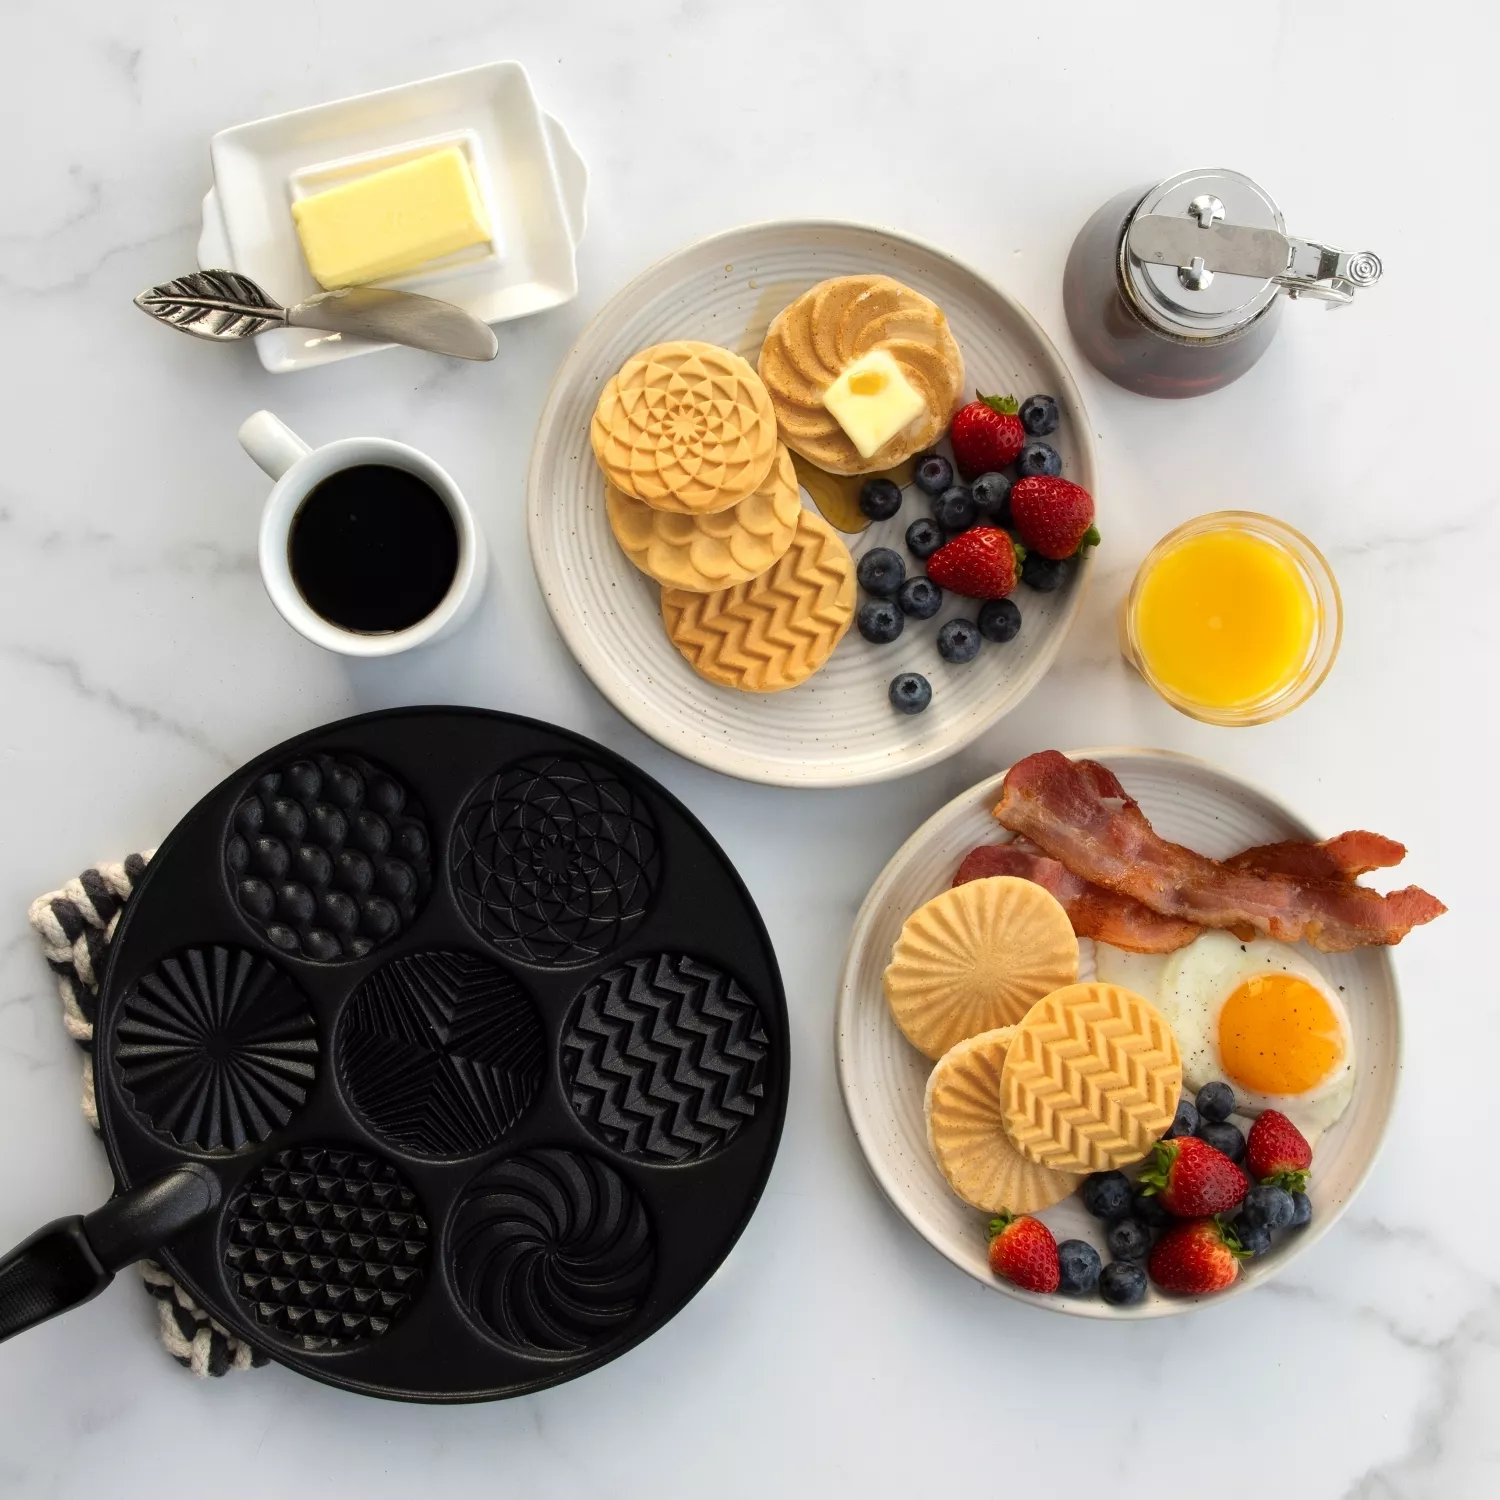 Nordic Ware Nonstick Patterns Pancake Pan